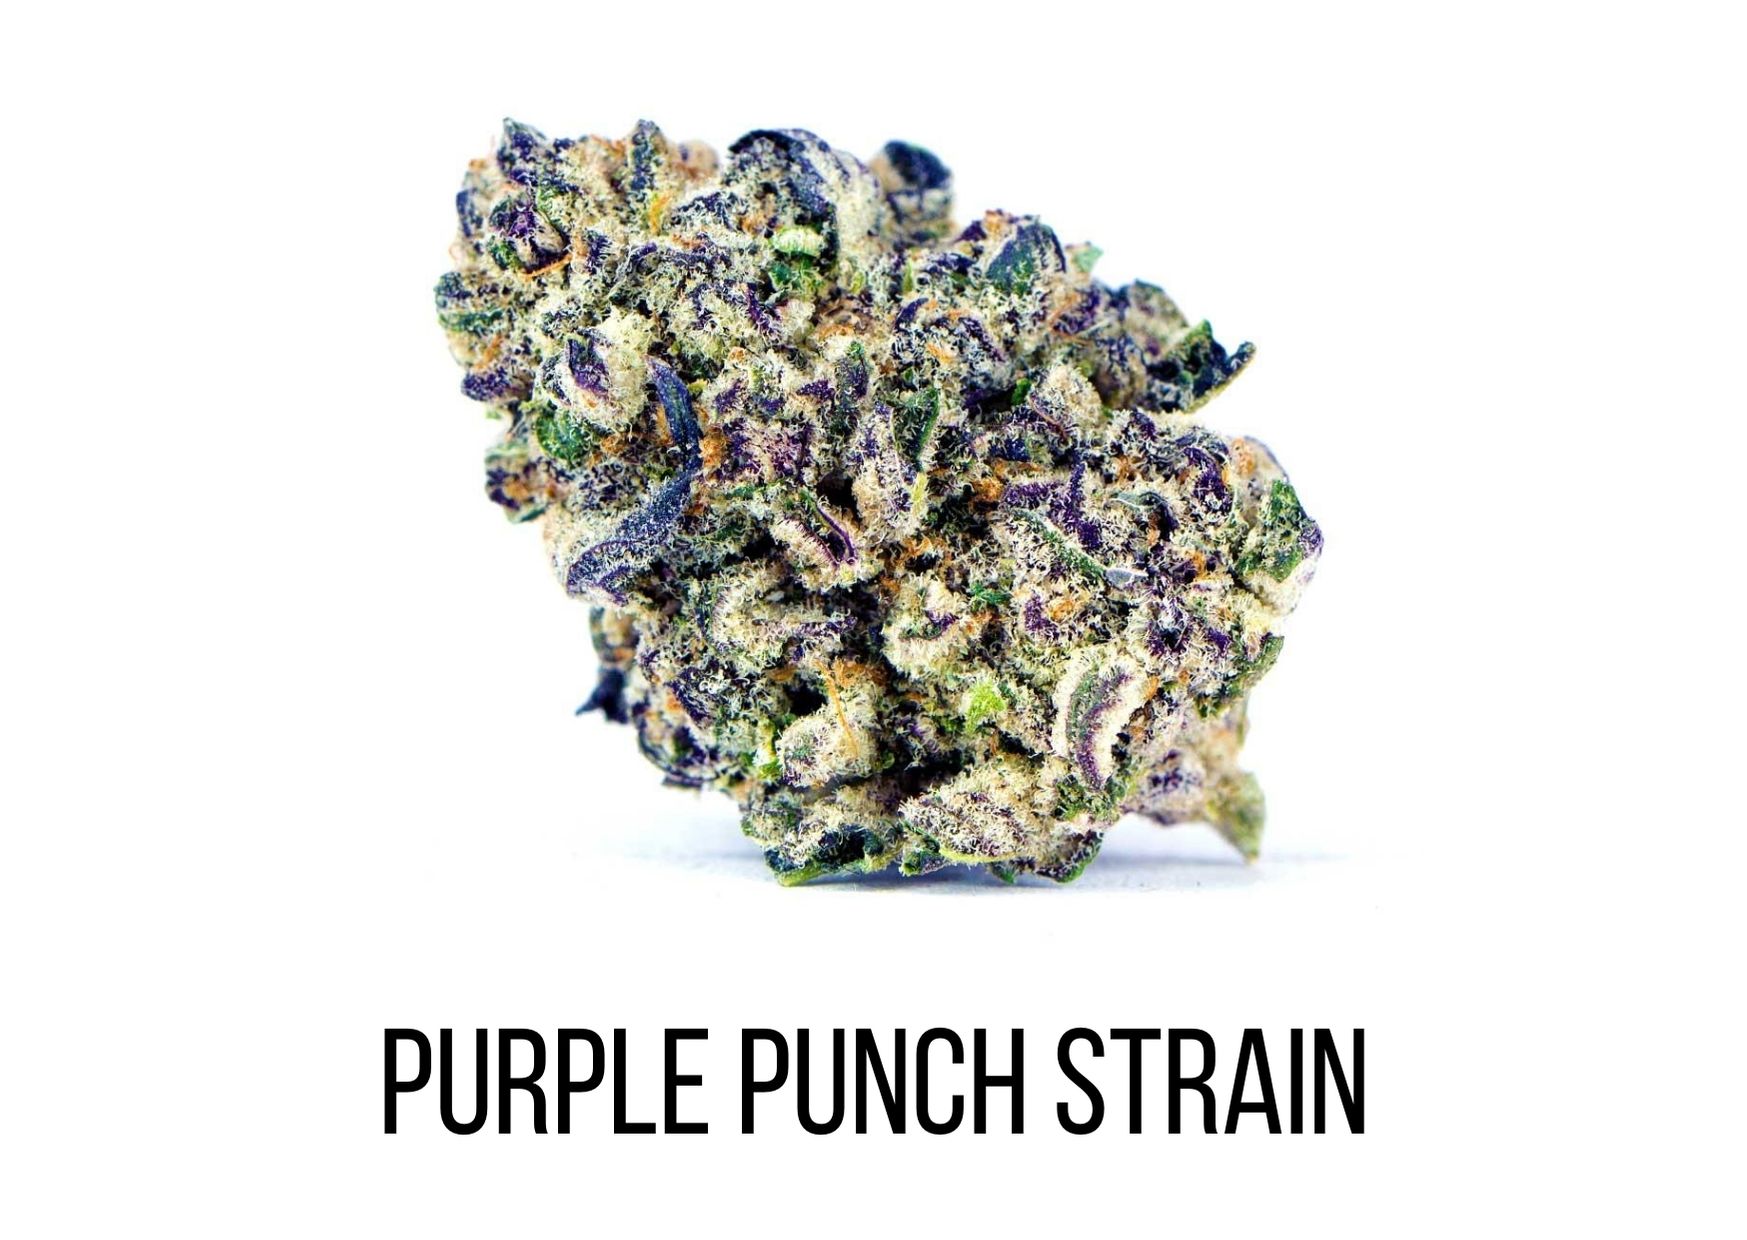 purple punch strain information